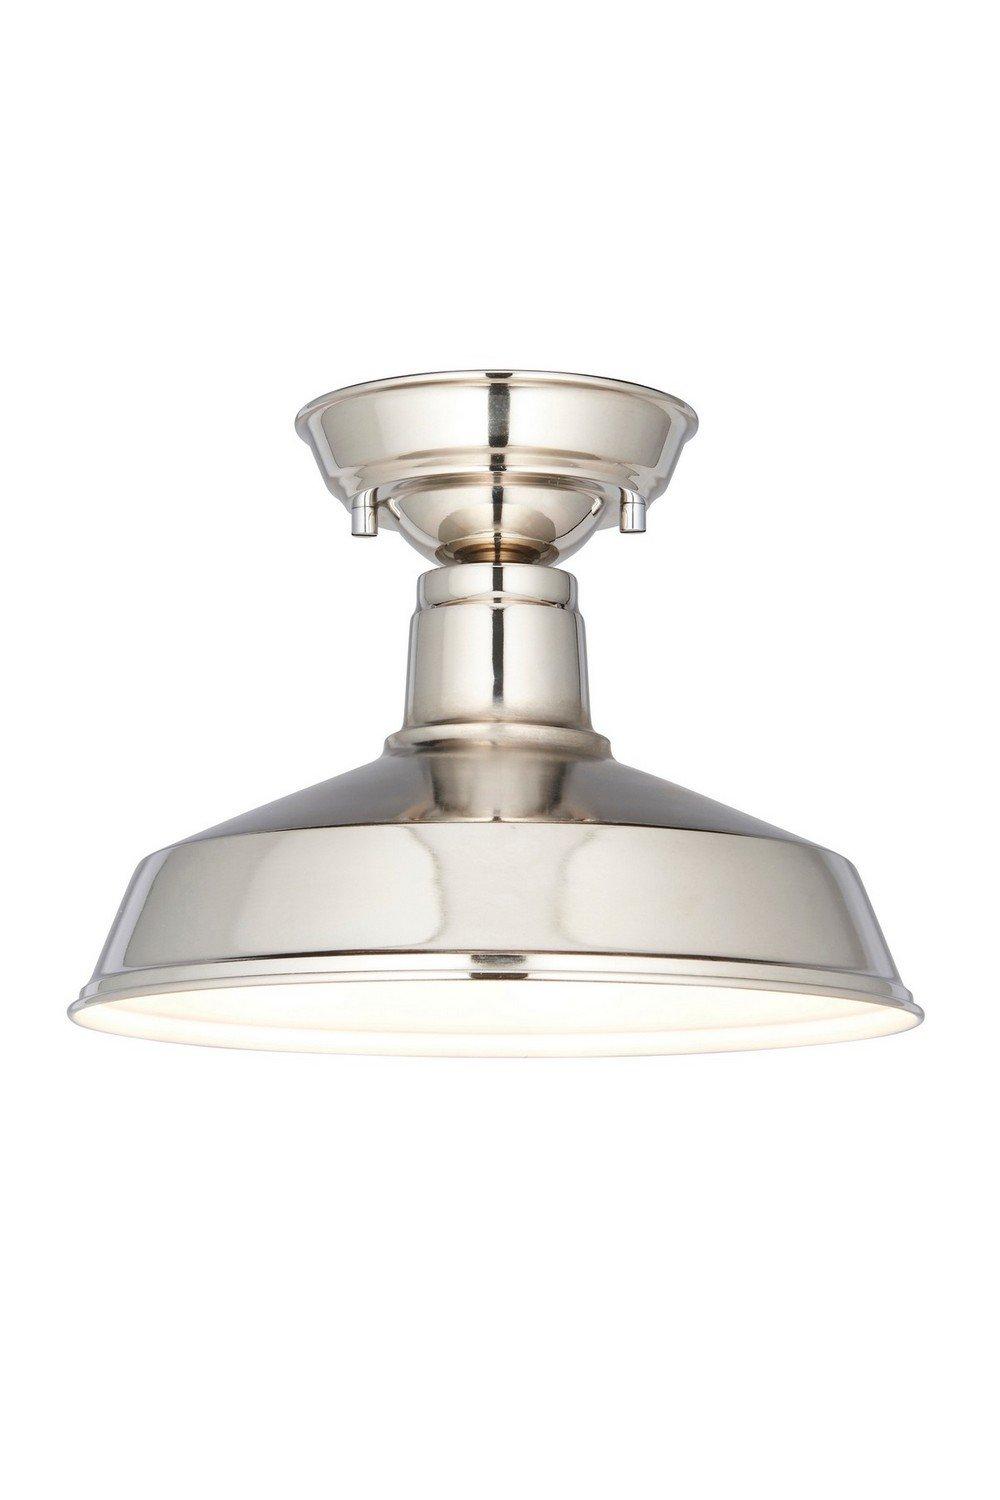 Darton Semi Flush Ceiling Pendant Light Polished Nickel Gloss White Inner Shade